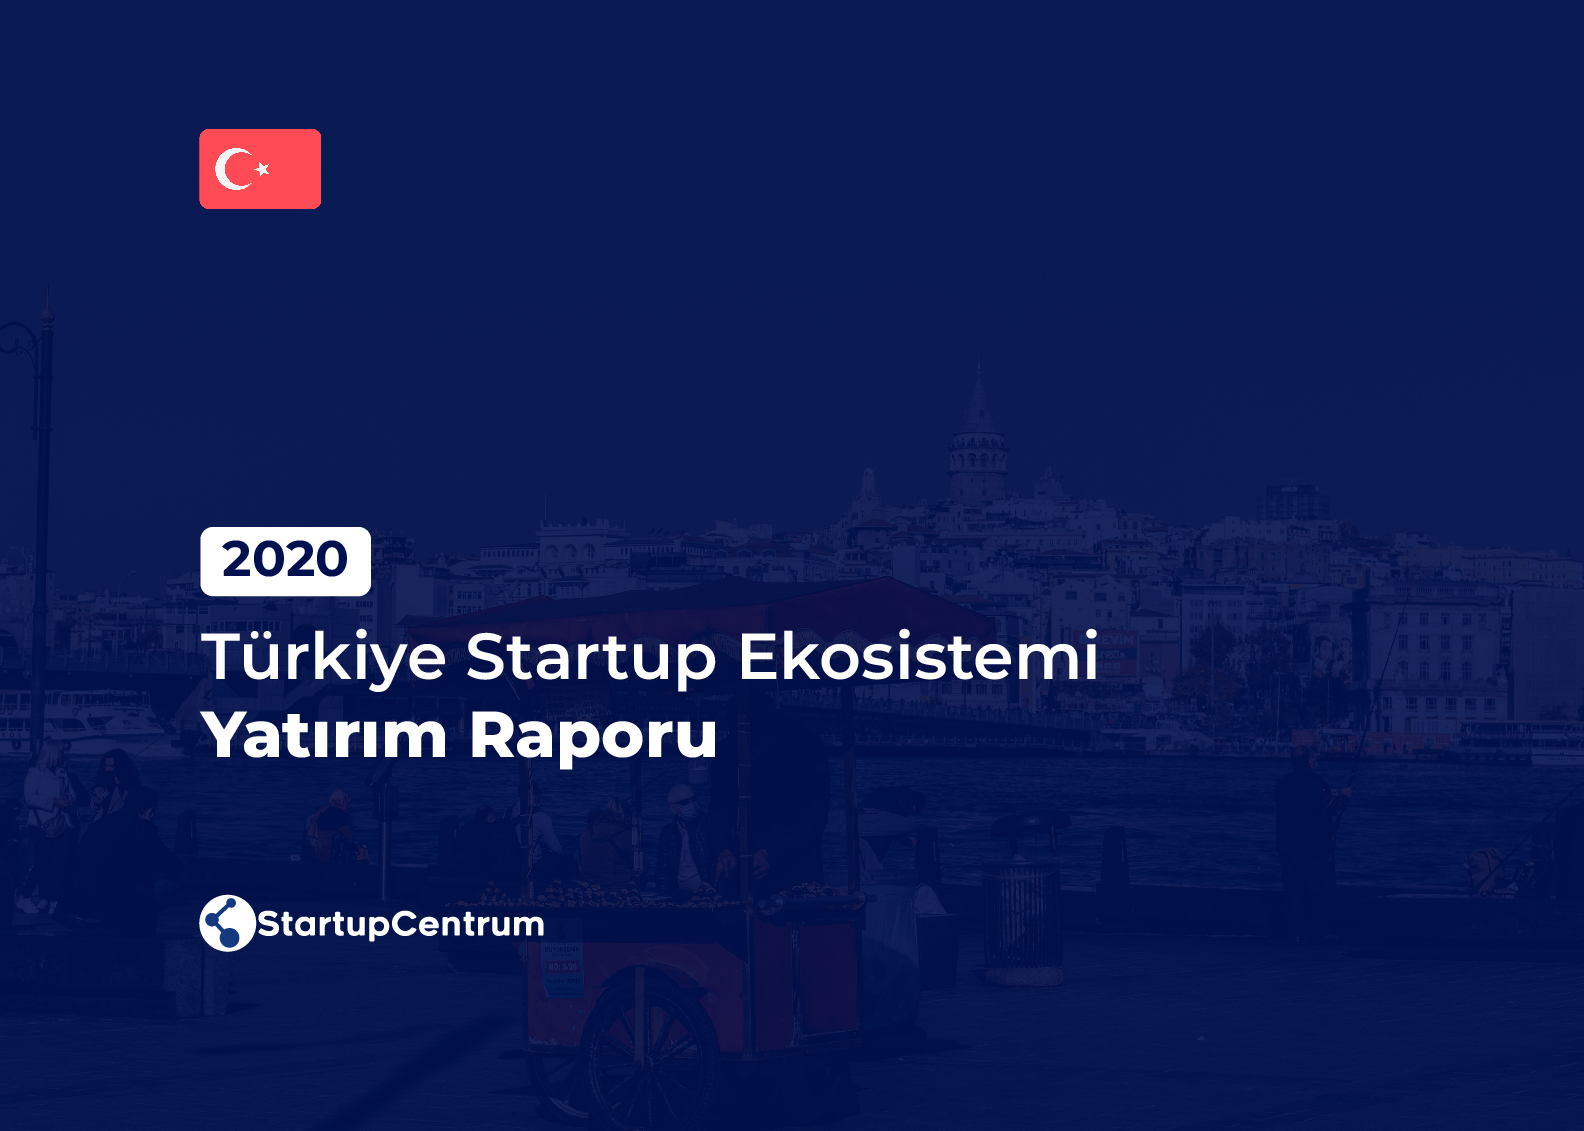 2020 - Türkiye Startup Ekosistemi Yatırım Raporu Cover Image